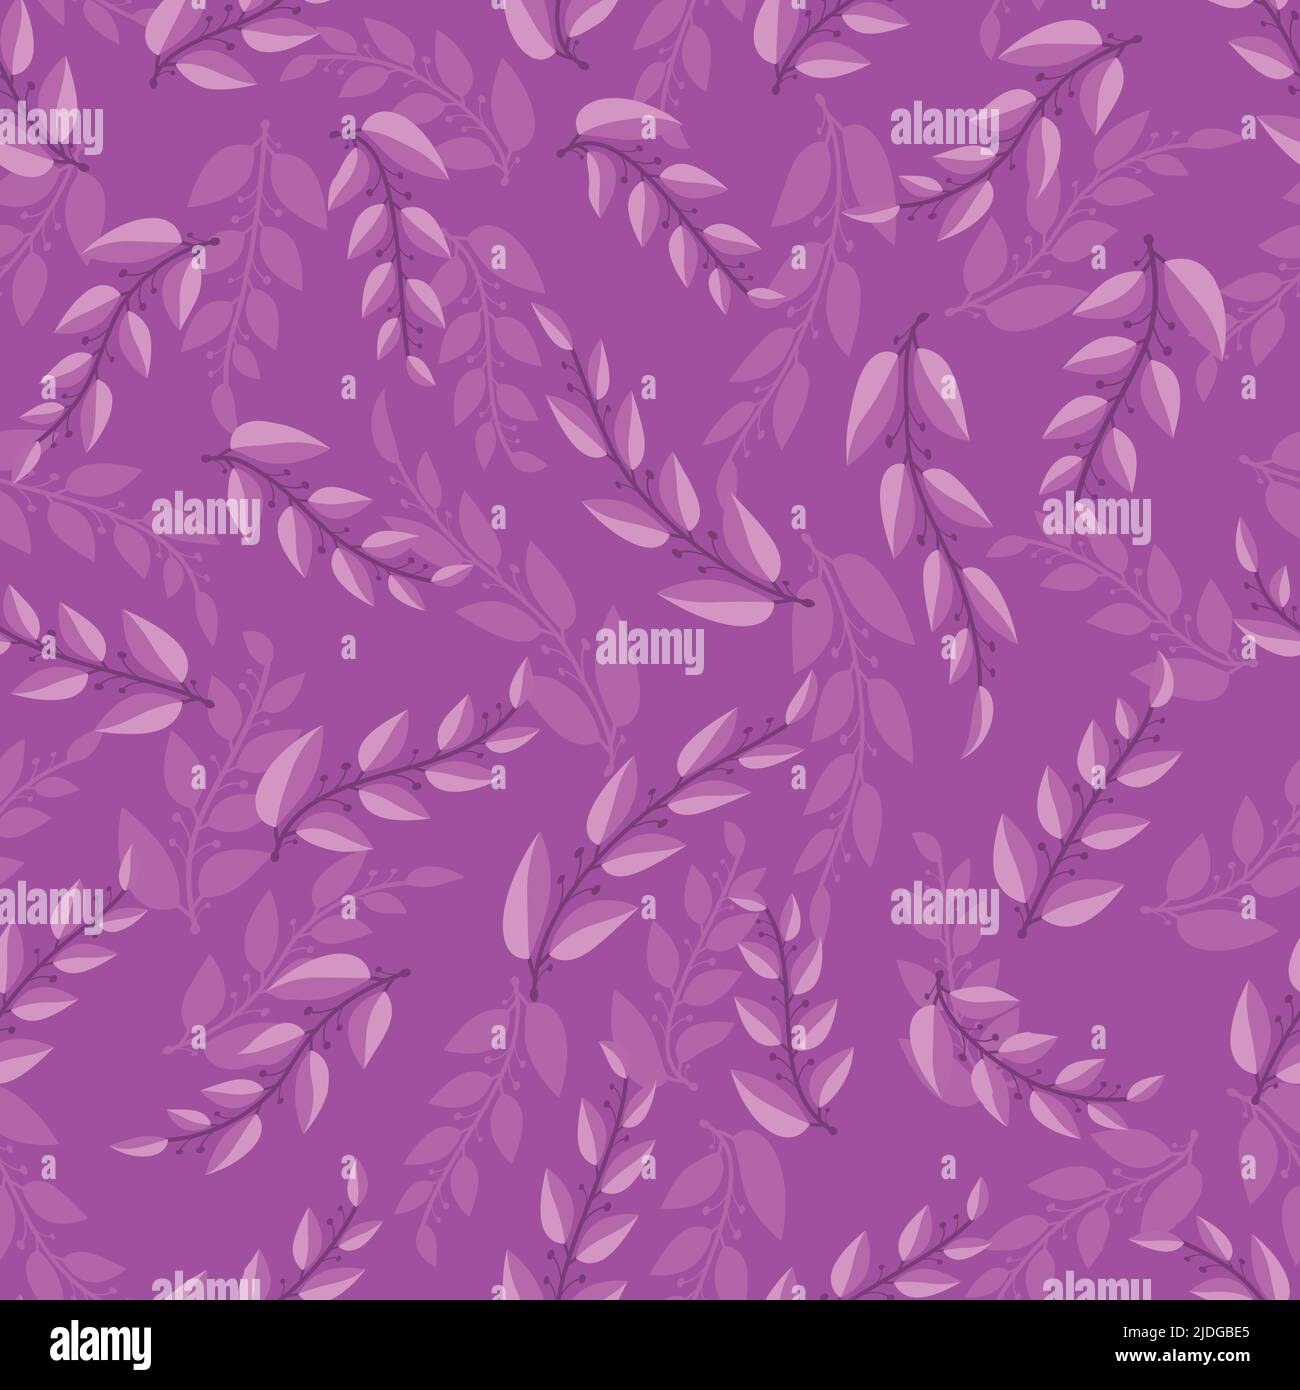 Lila violett Vektor nahtlose Wiederholung Muster. Lavendel Retro Hintergrund. Elegantes Oberflächenmuster Design für Stoff, Textil, Scrapbooking, Verpackung Stock Vektor